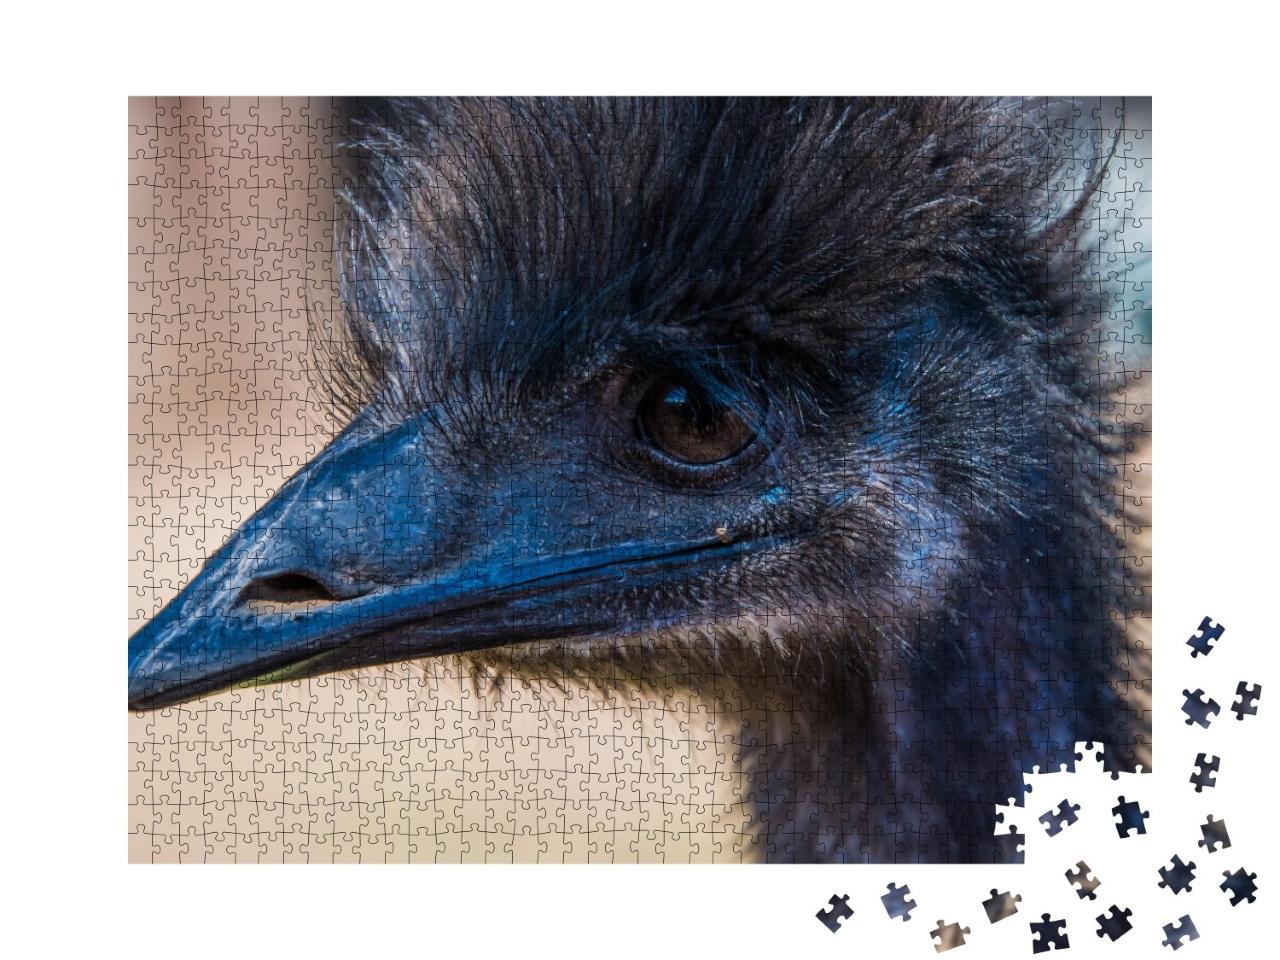 Puzzle de 1000 pièces « Profil d'Emu »